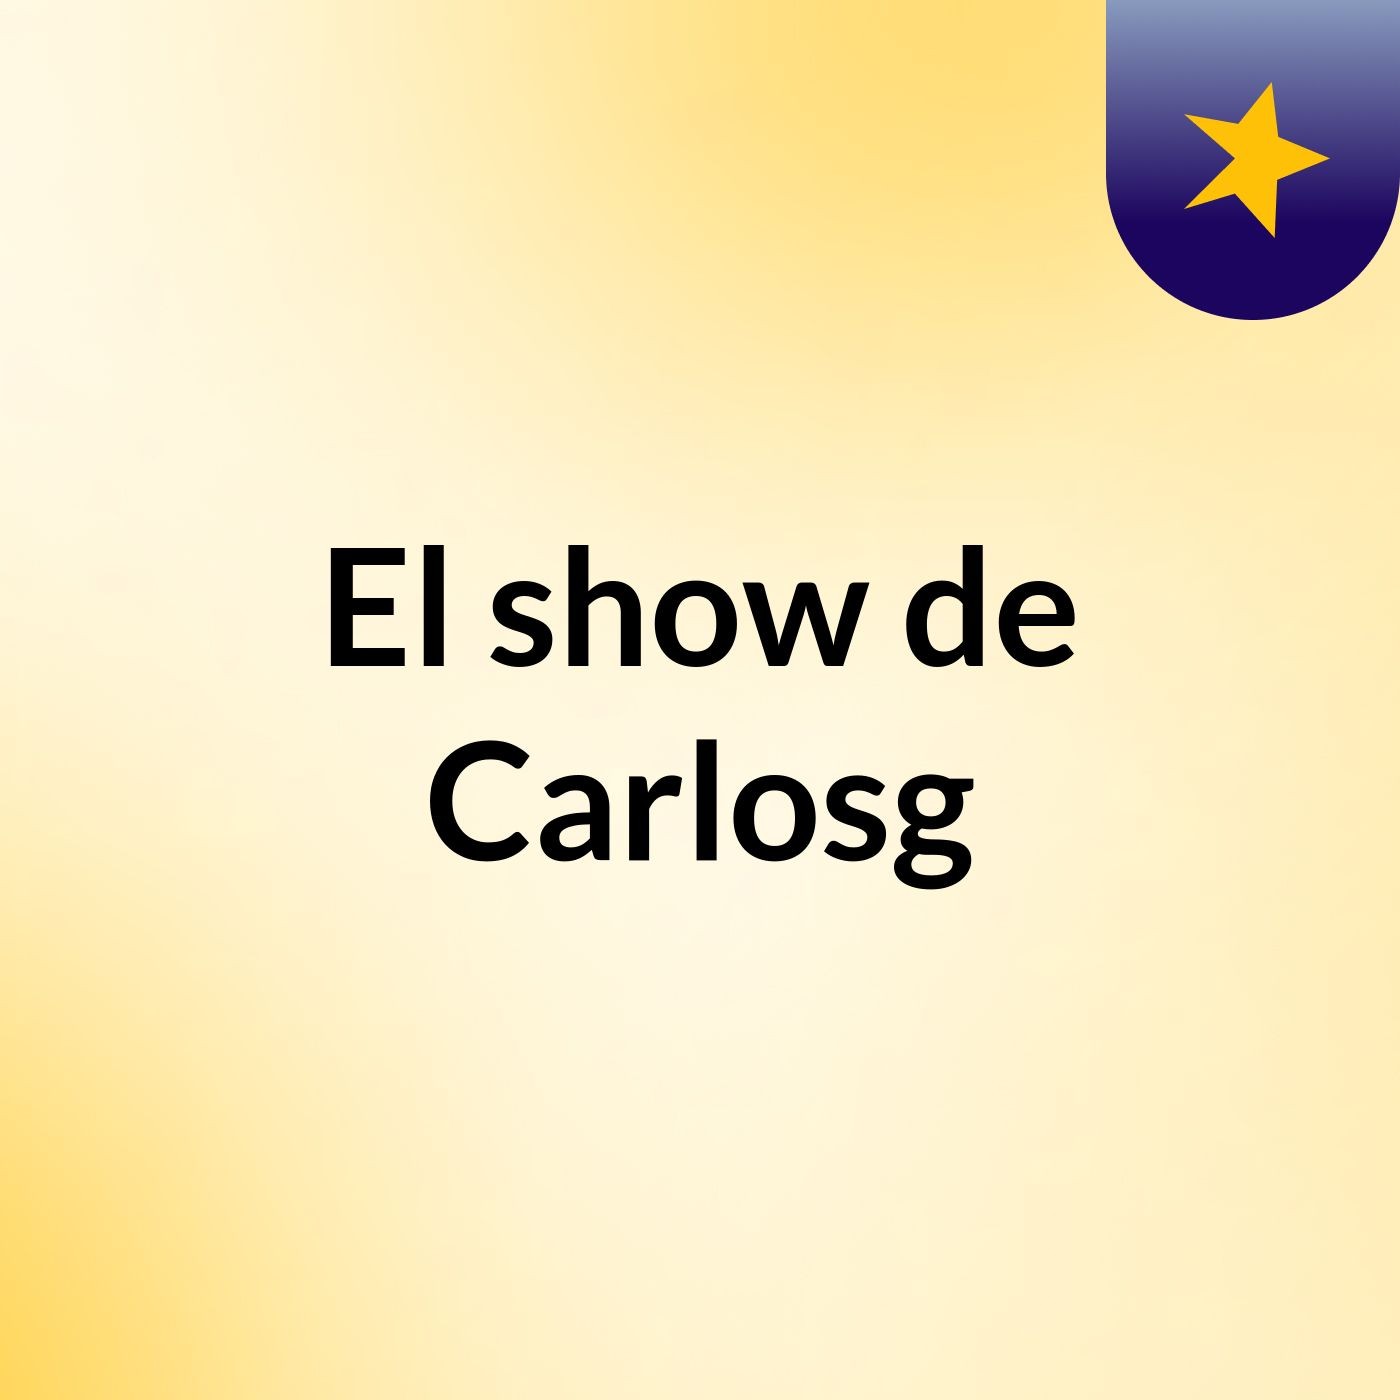 El show de Carlosg